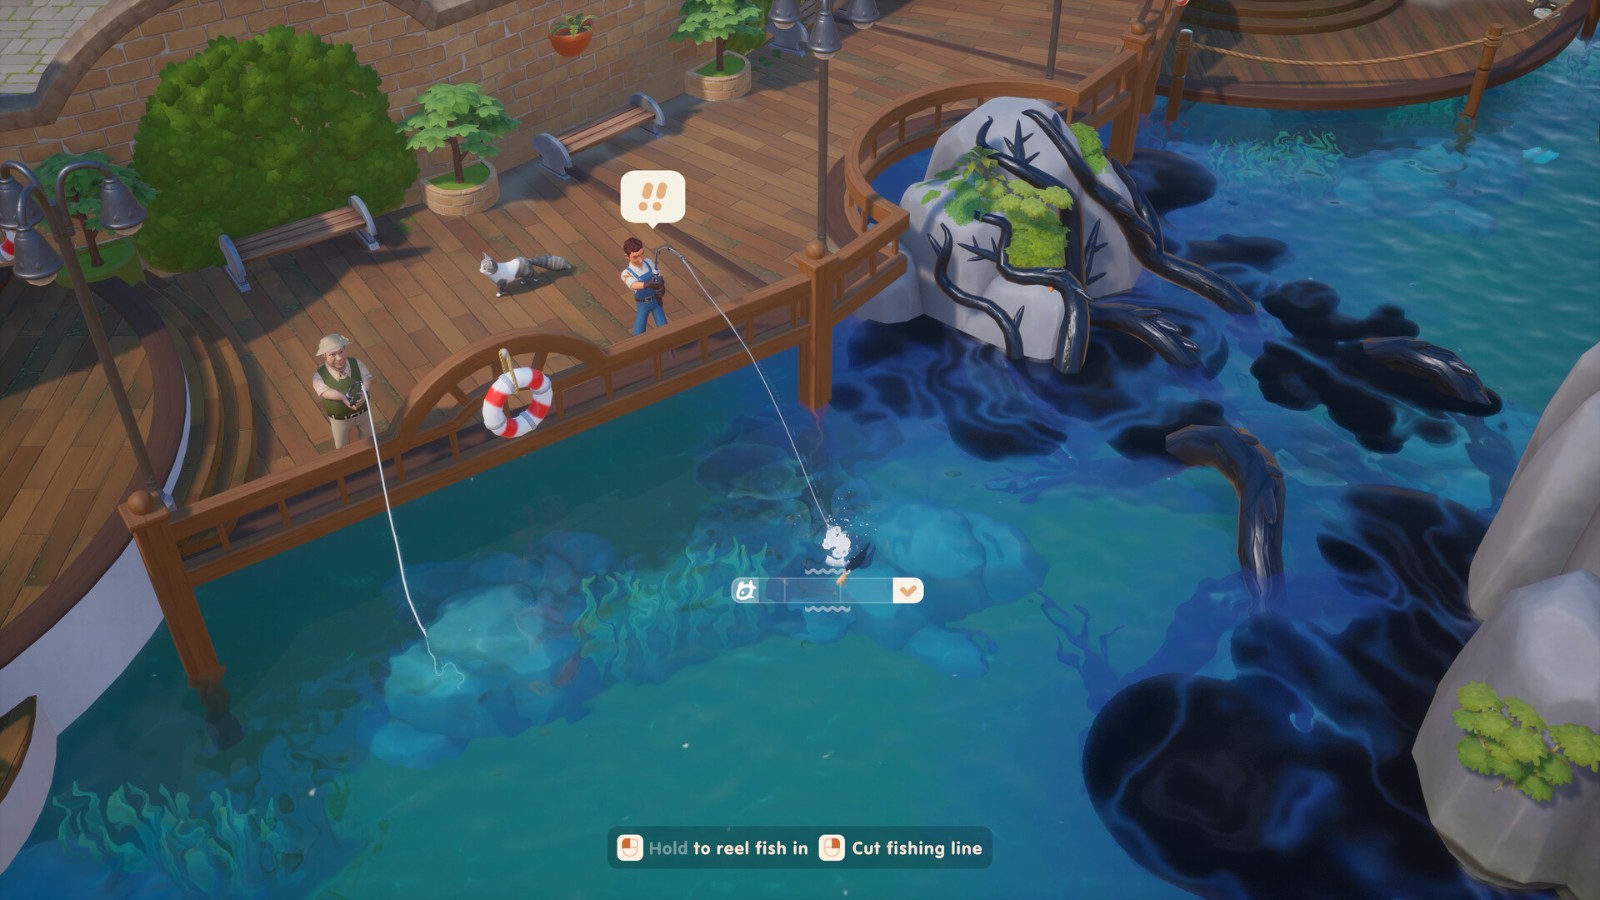 農場休閒模擬遊戲《珊瑚島》10月11日登陸Steam搶先體驗